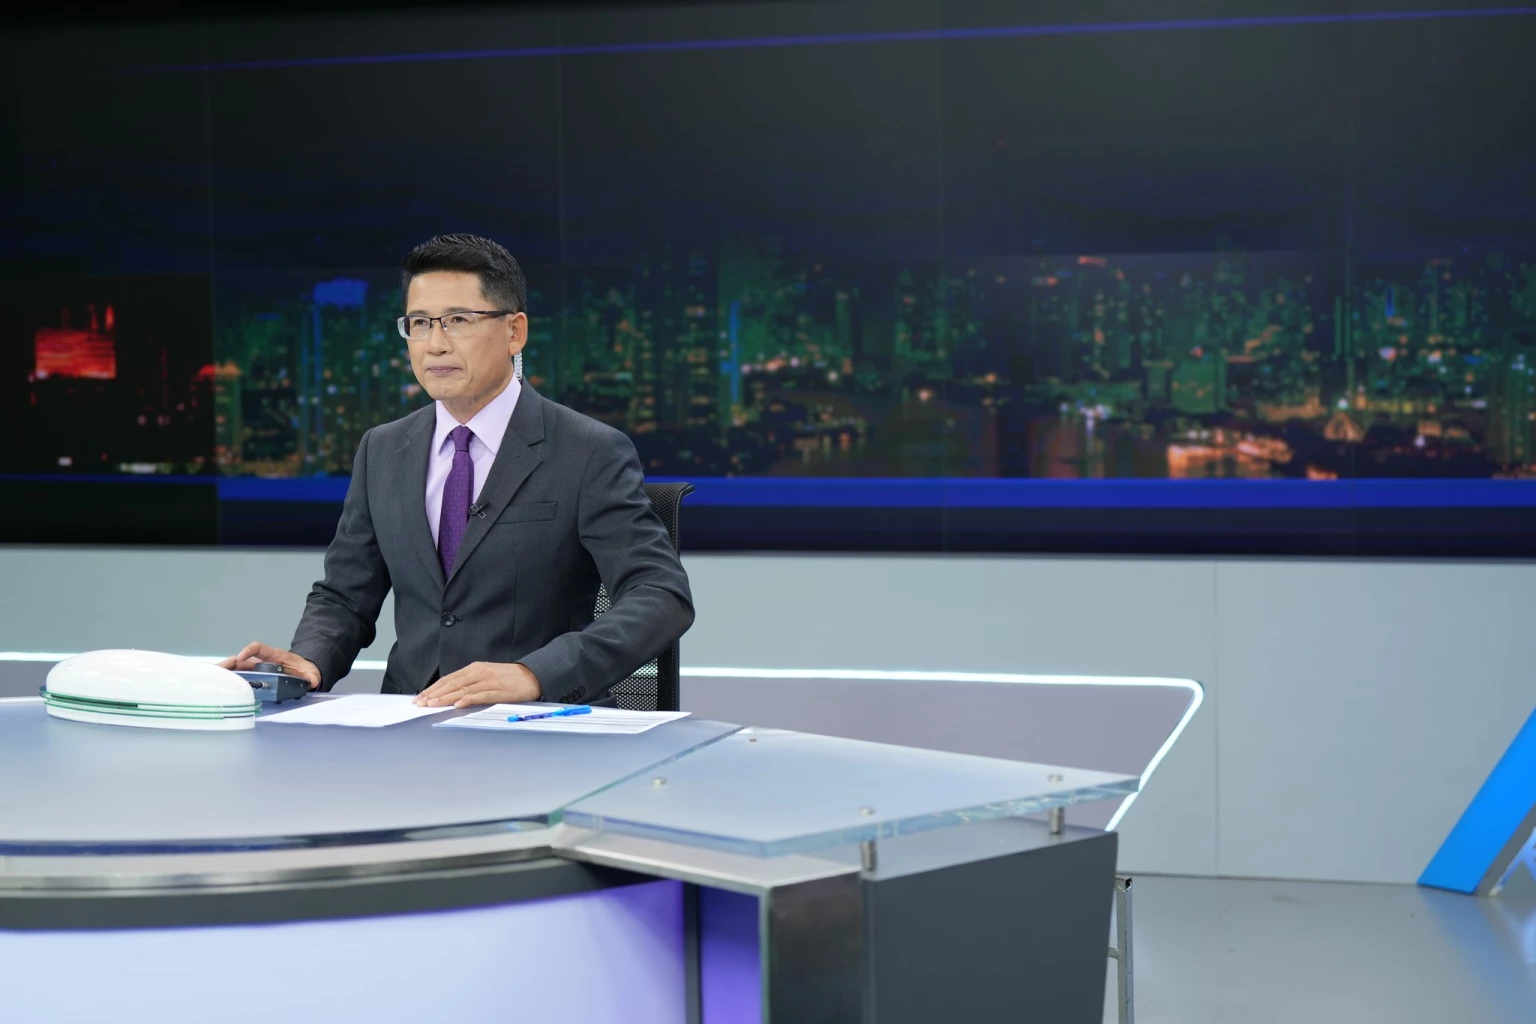 เปิดรายชื่ออดีตนักข่าว ‘ITV’ รวม ‘ตัวตึง’ วงการสื่อไทยในปัจจุบัน